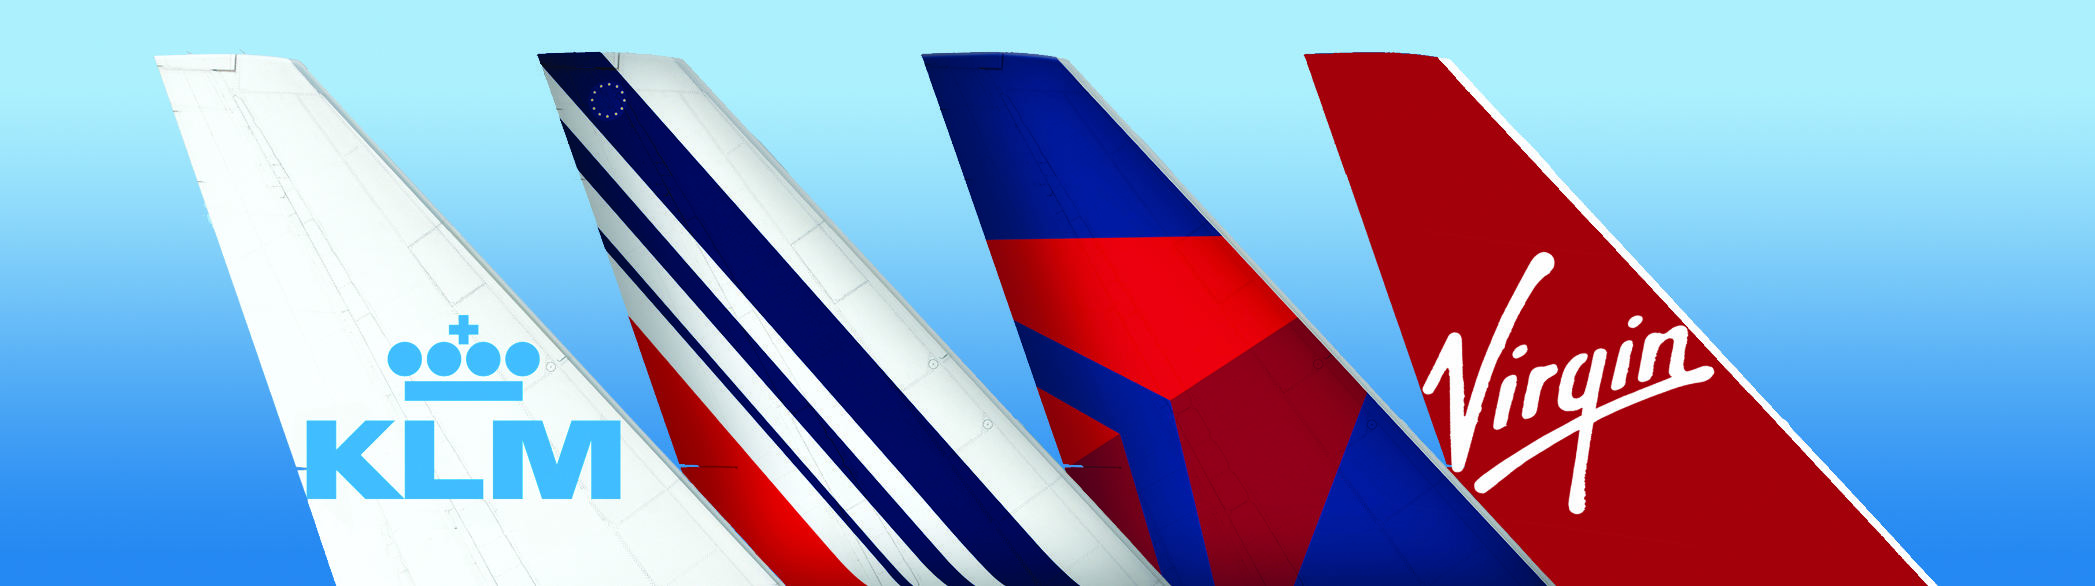 Transatlantique : Air France, KLM et Delta fêtent les dix ans